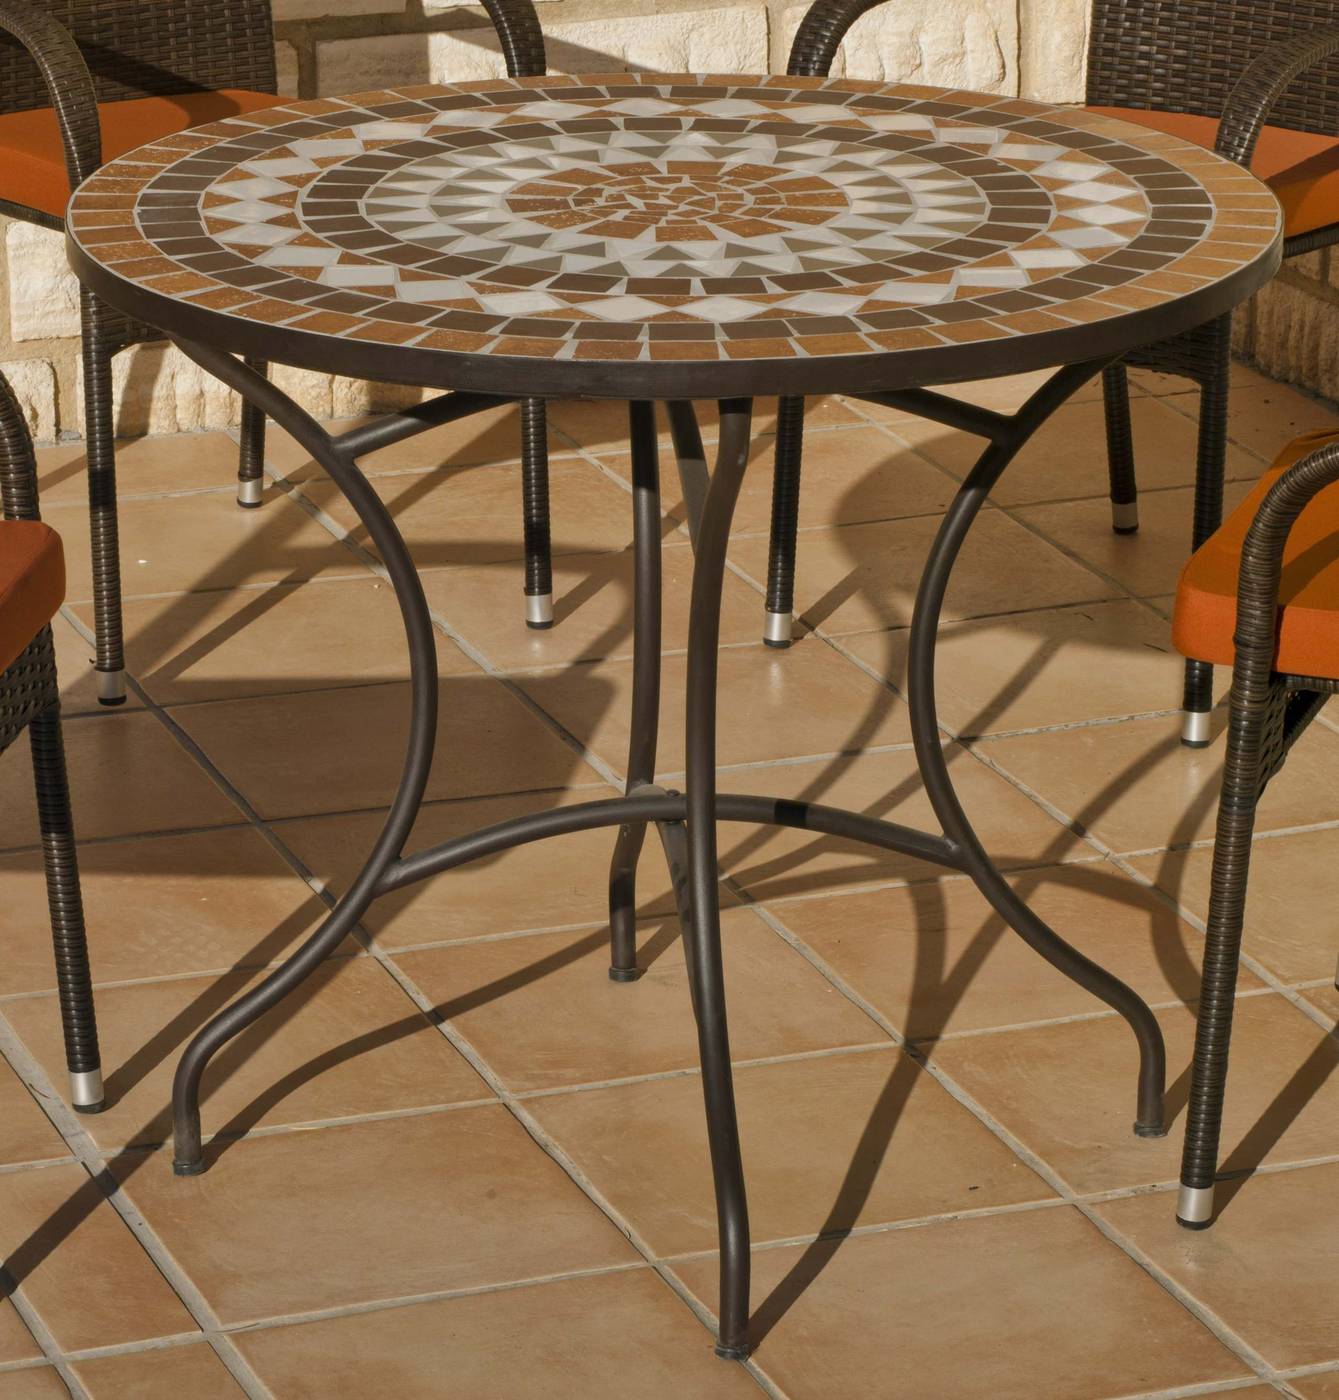 Conjunto Mosaico Saida-Vigo 90-4 - Conjunto para jardín o terraza de forja: 1 mesa con panel mosaico + 4 sillones de forja + 4 cojines